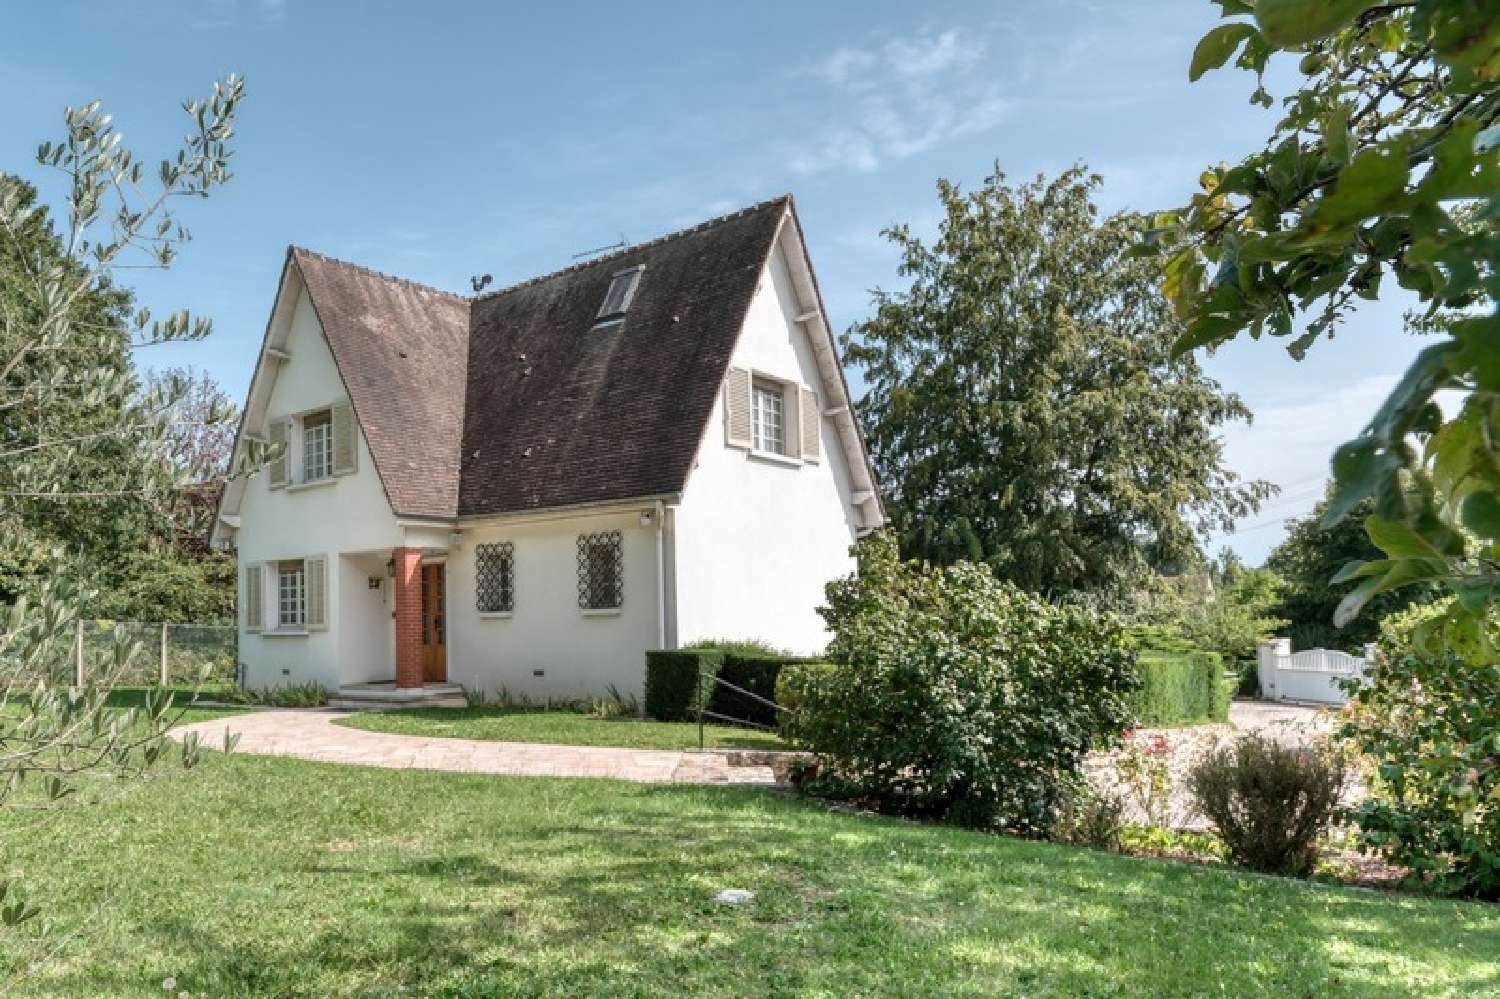  à vendre maison bourgeoise Neauphle-le-Château Yvelines 3